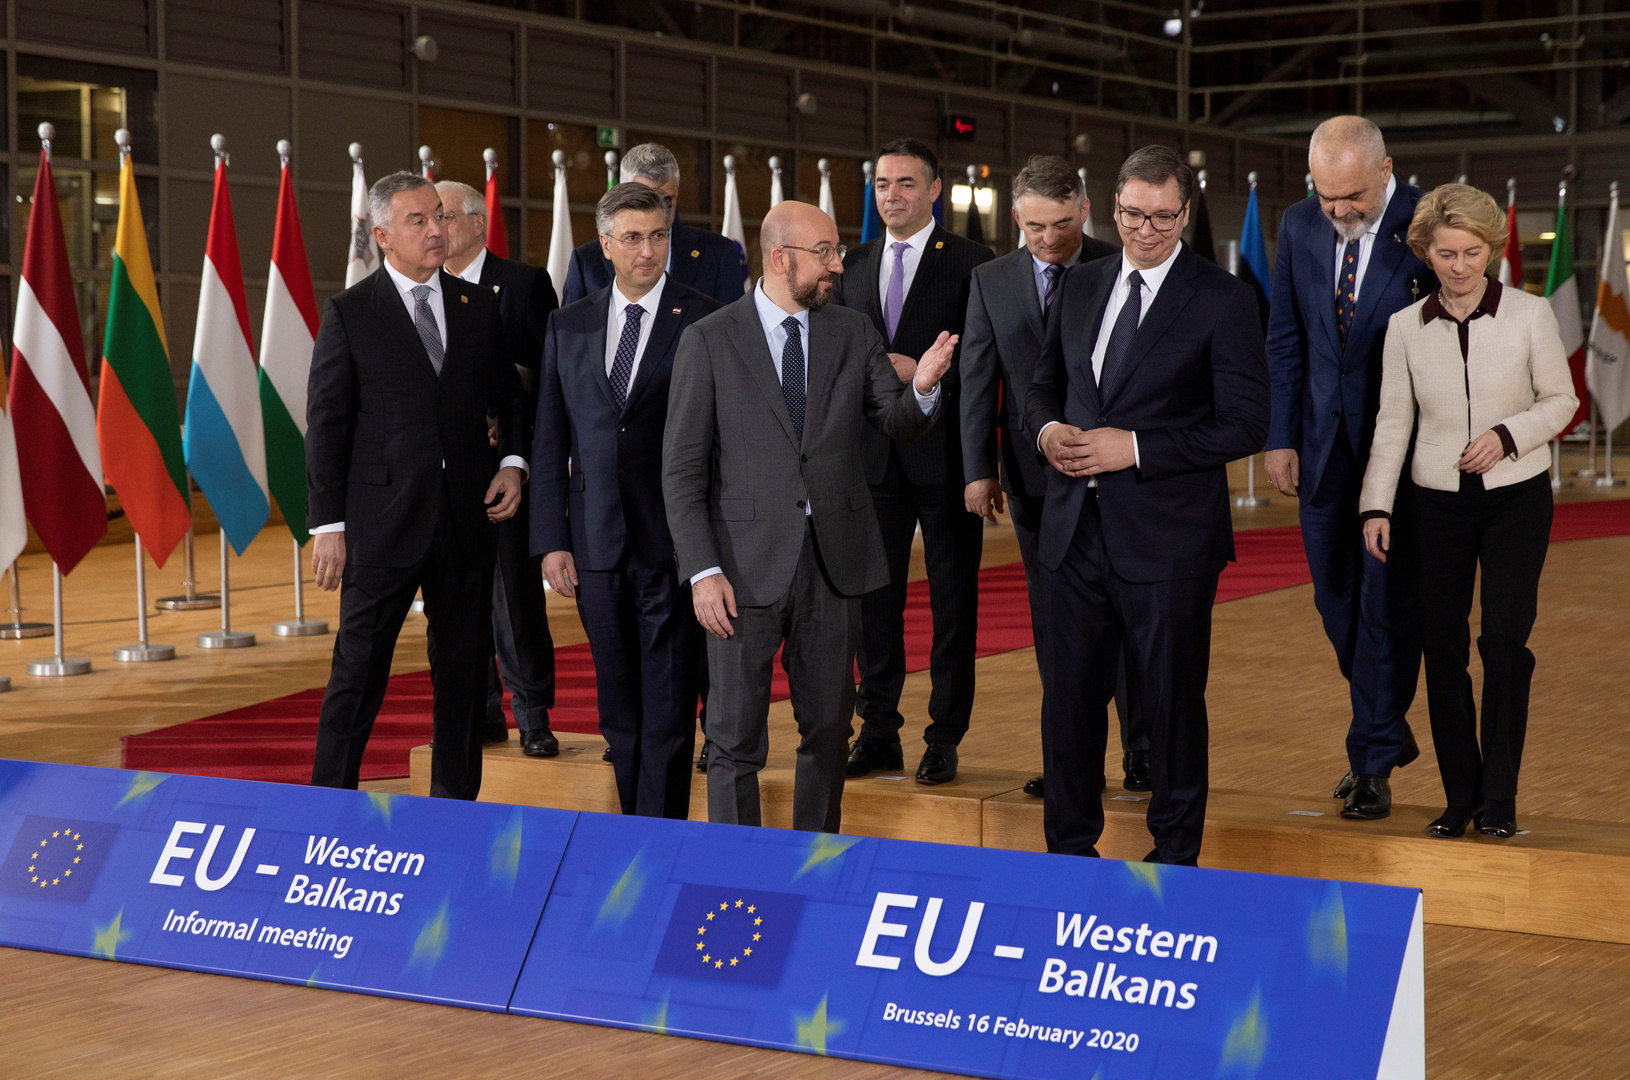 مبعوث الاتحاد الأوروبي يتوقع صفقة تطبيع بين صربيا وكوسوفو قريبا